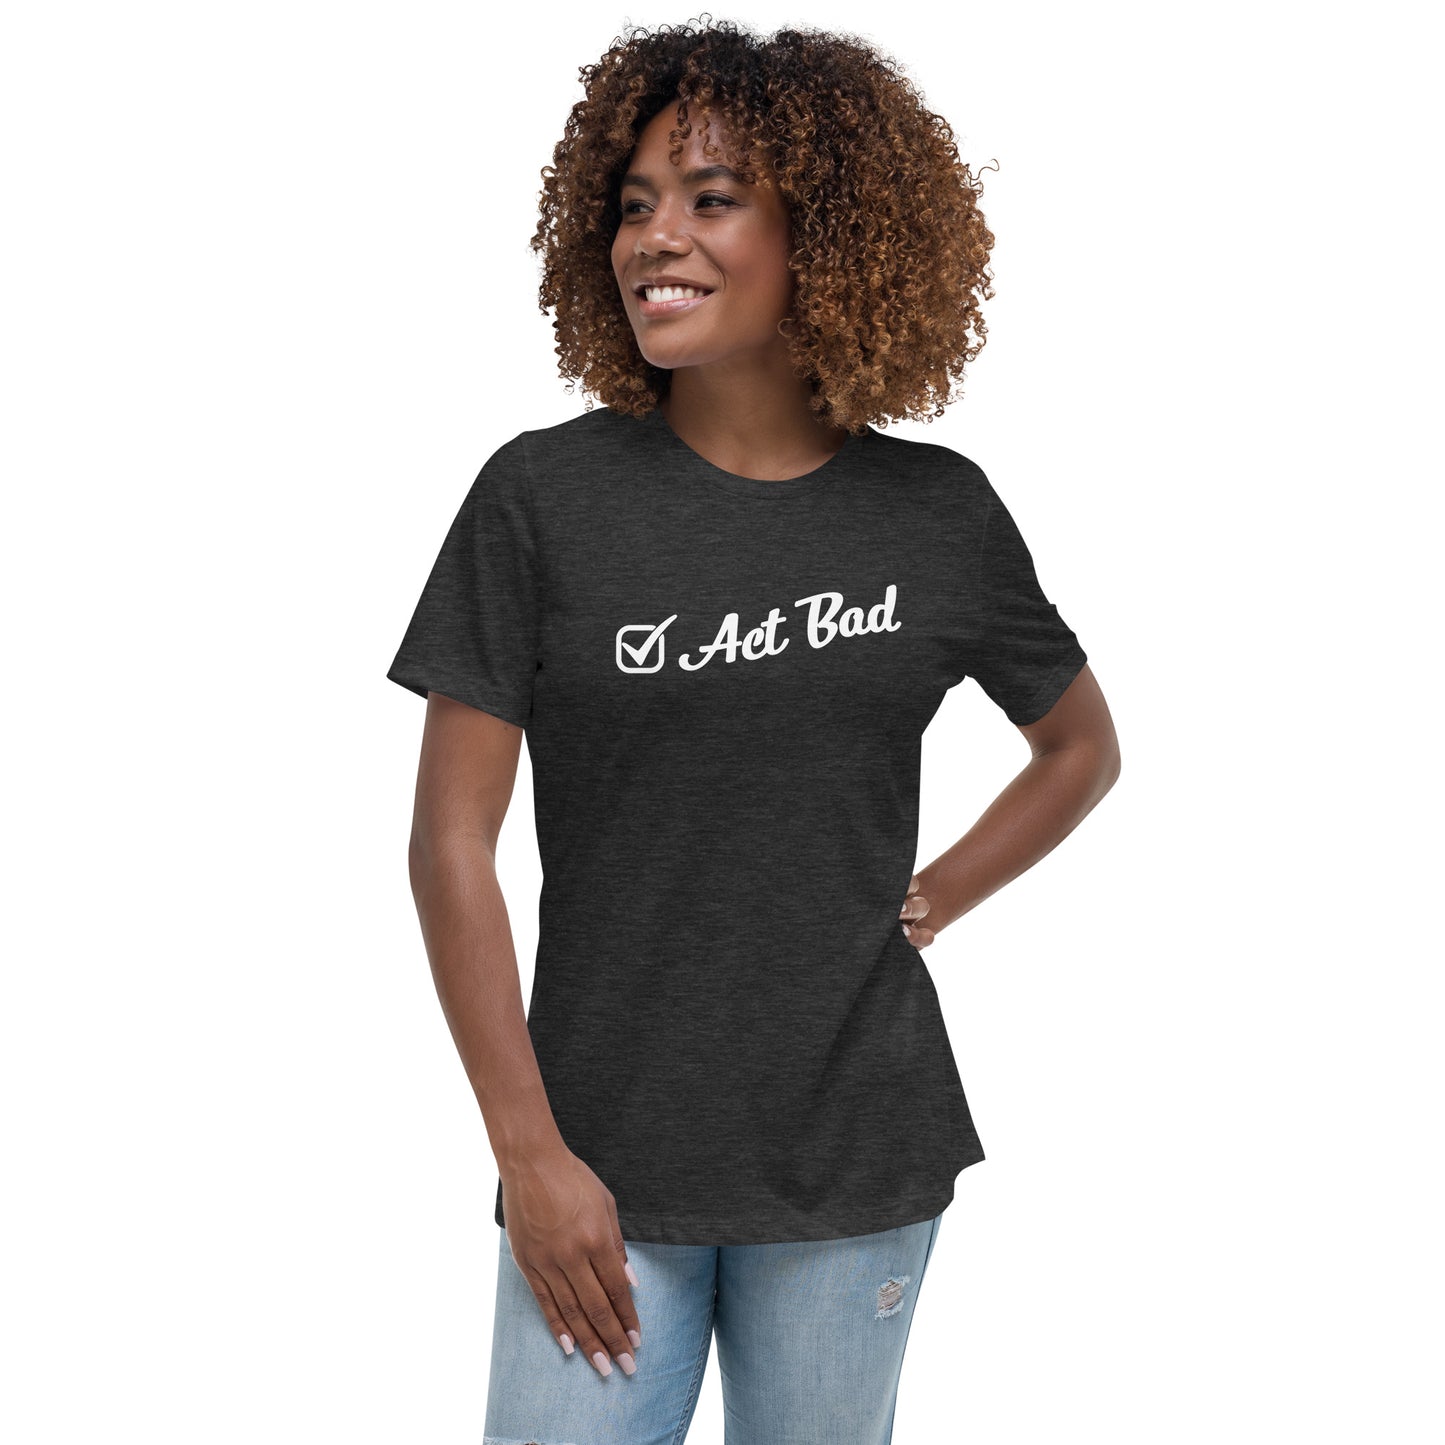 "Act Bad" Women’s T-Shirt